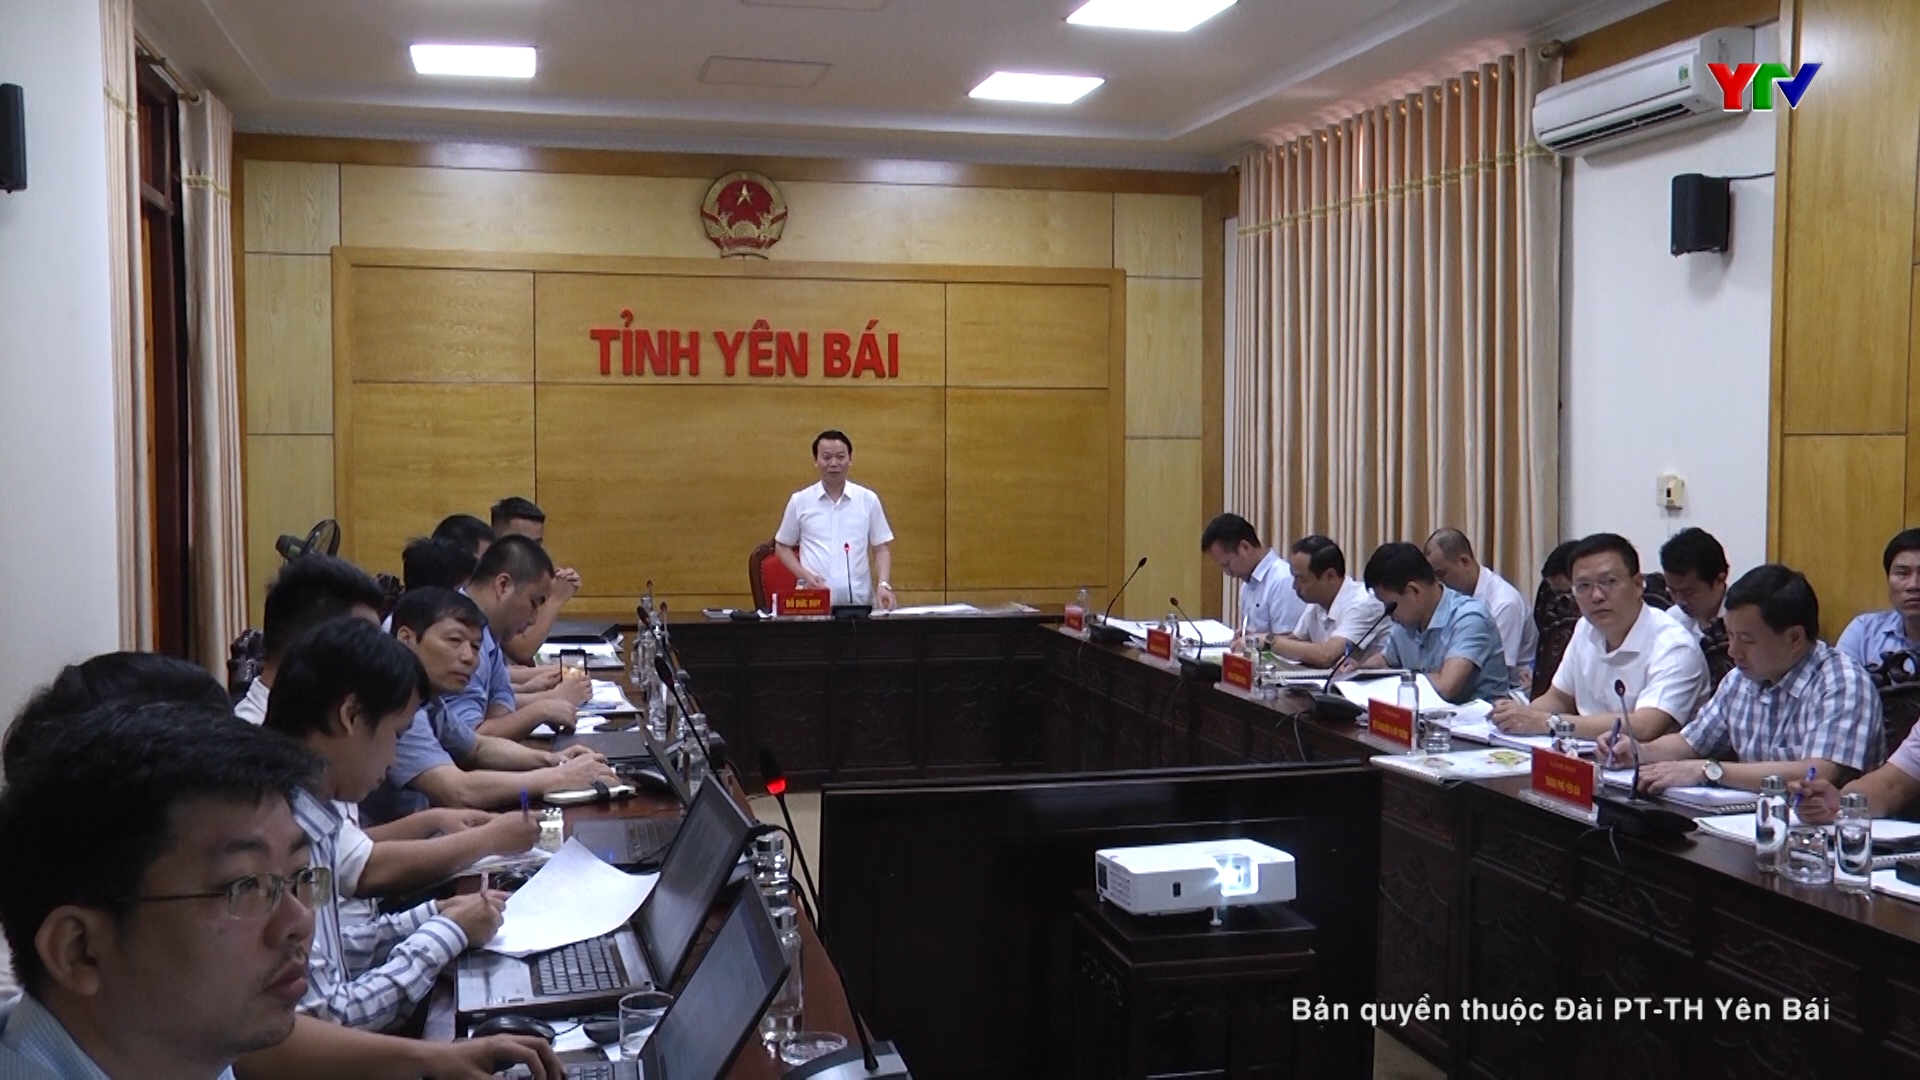 Hội nghị đóng góp ý kiến vào các đồ án quy hoạch phát triển đô thị trên địa bàn TP Yên Bái